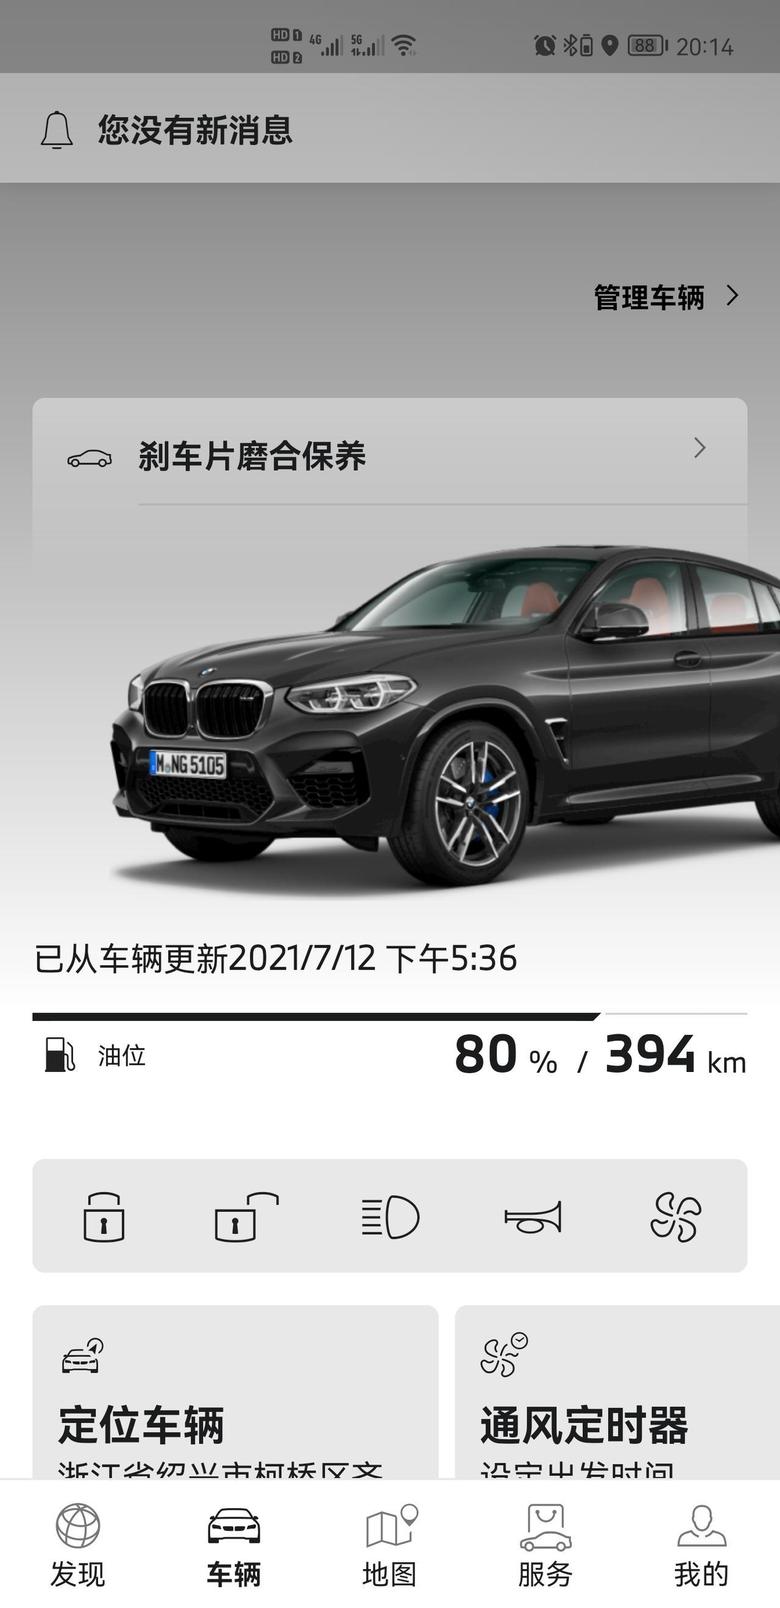 宝马x4 m 绍兴杭州这边有宝马m的车友圈吗，提了一个月了，两千公里，轮毂好普通啊，想换一个，有好看的推荐吗